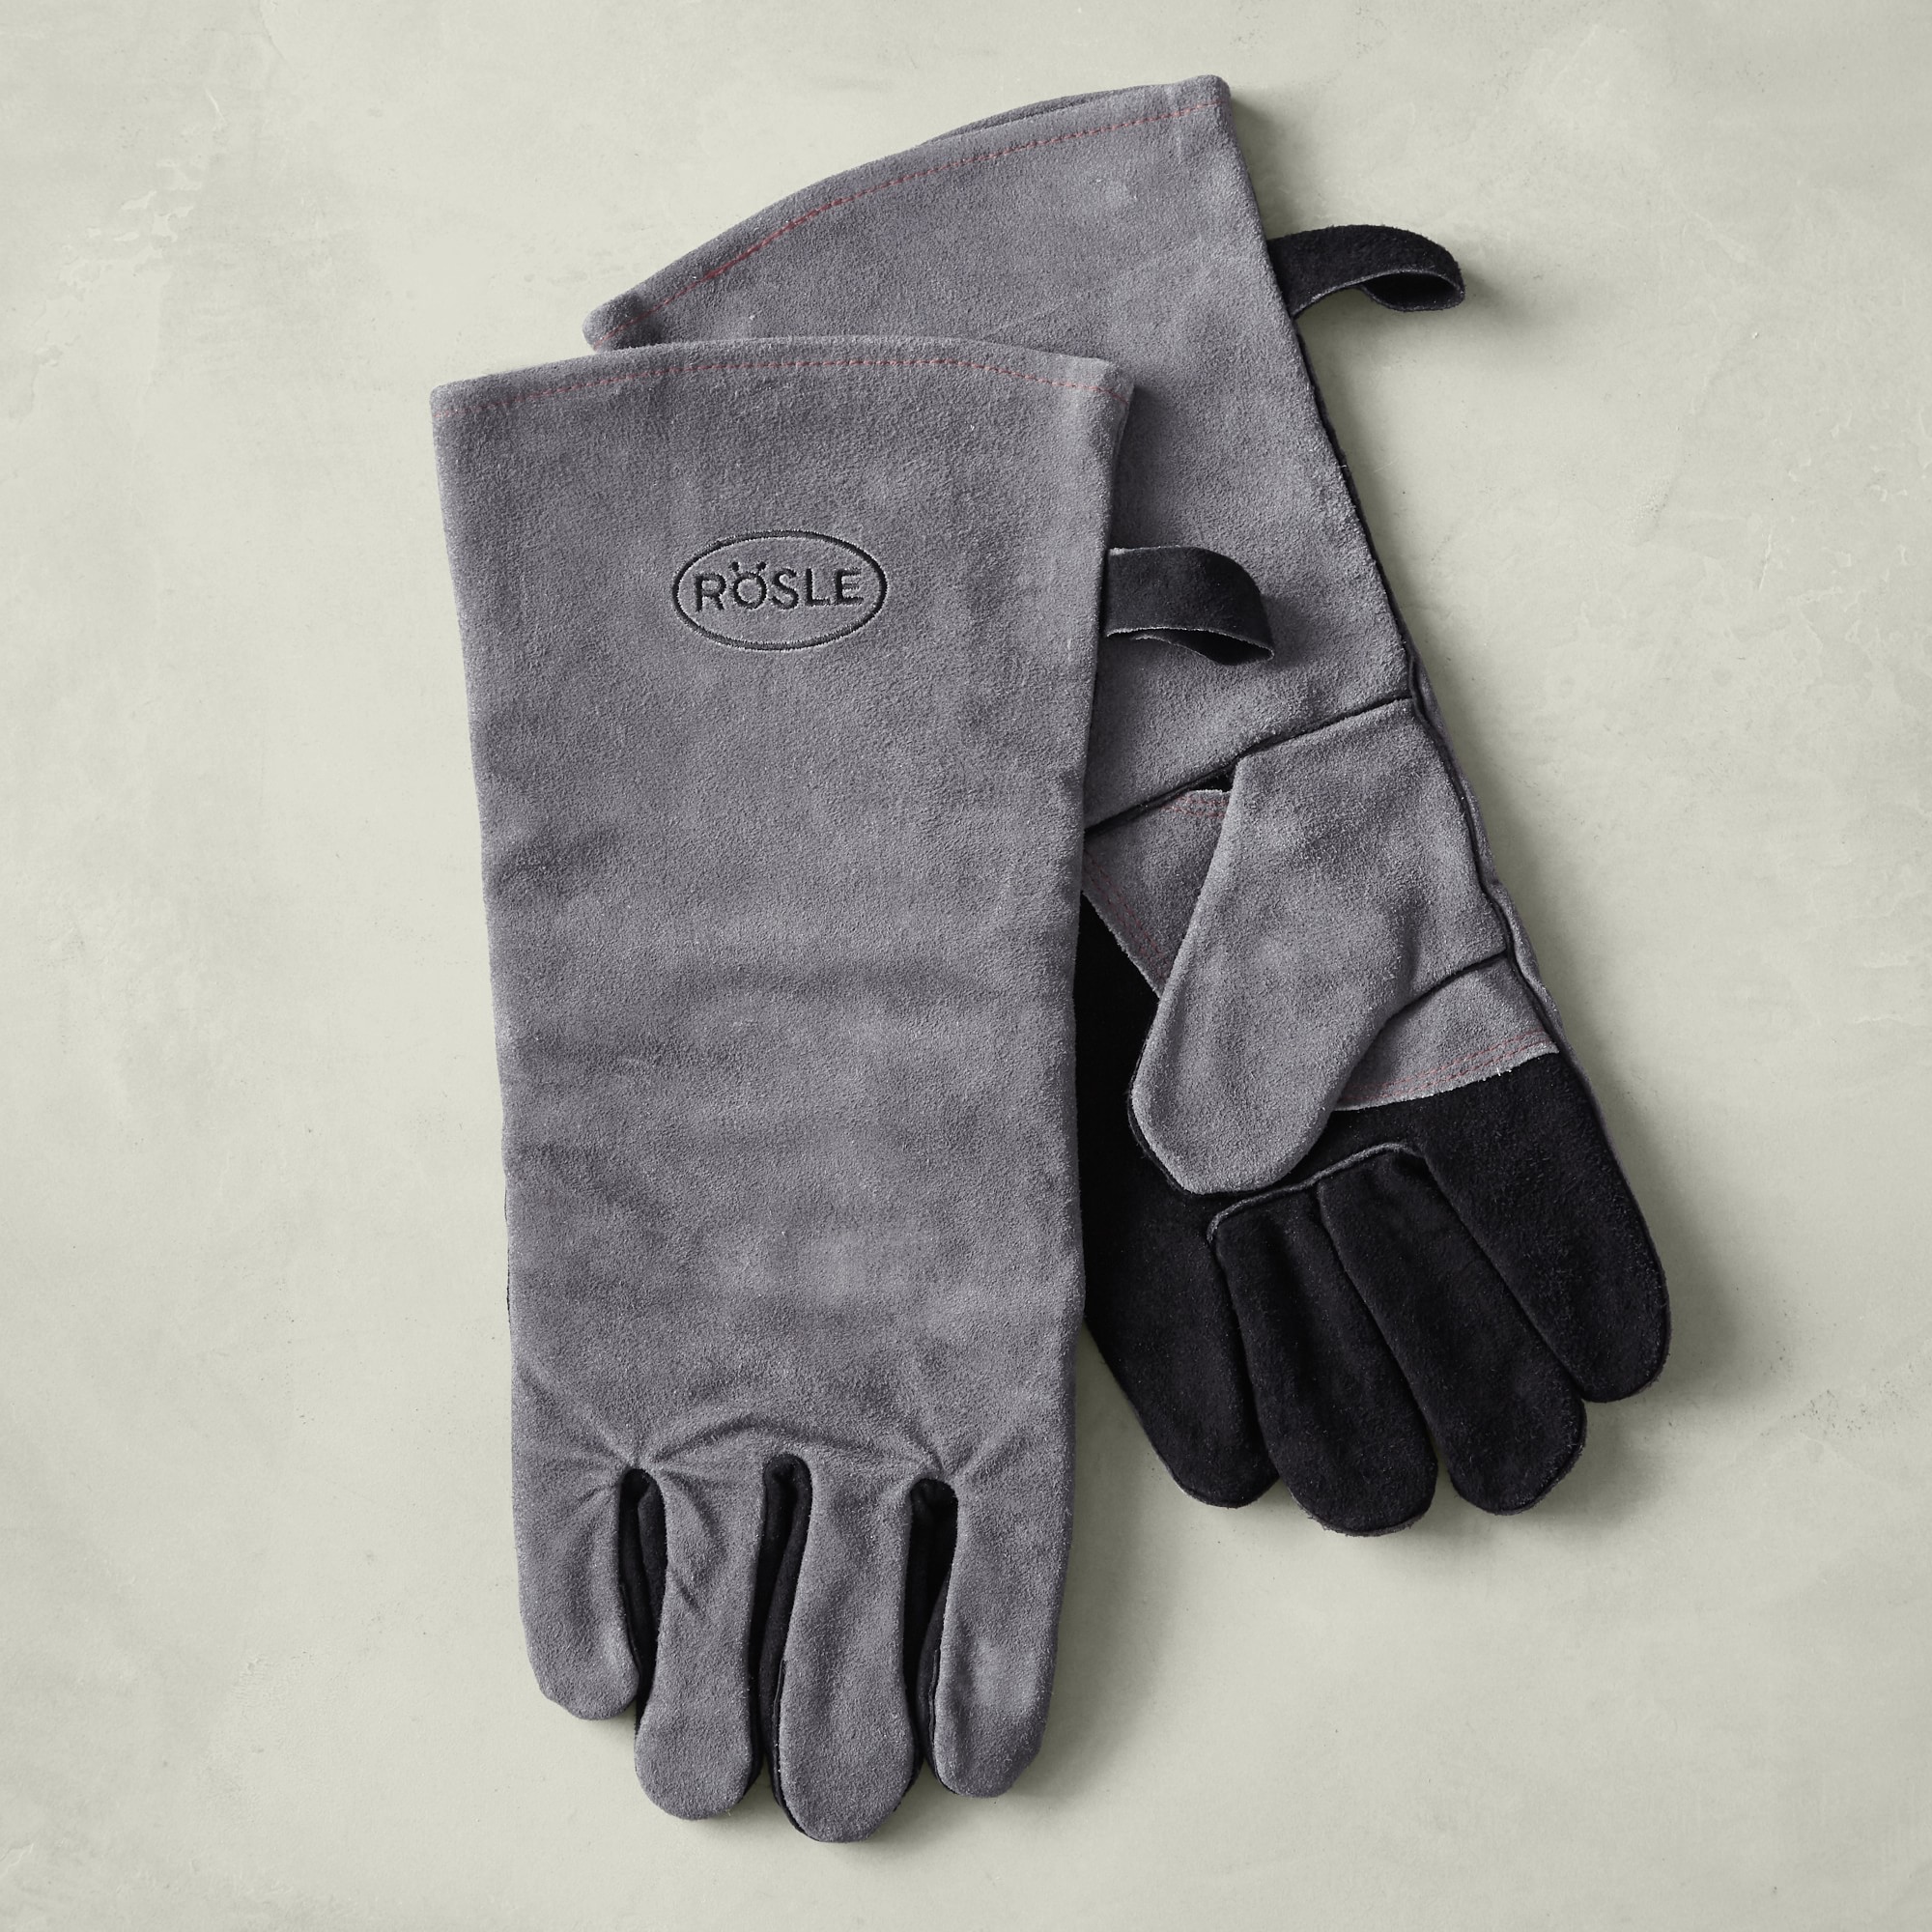 Rösle Leather Grilling Gloves